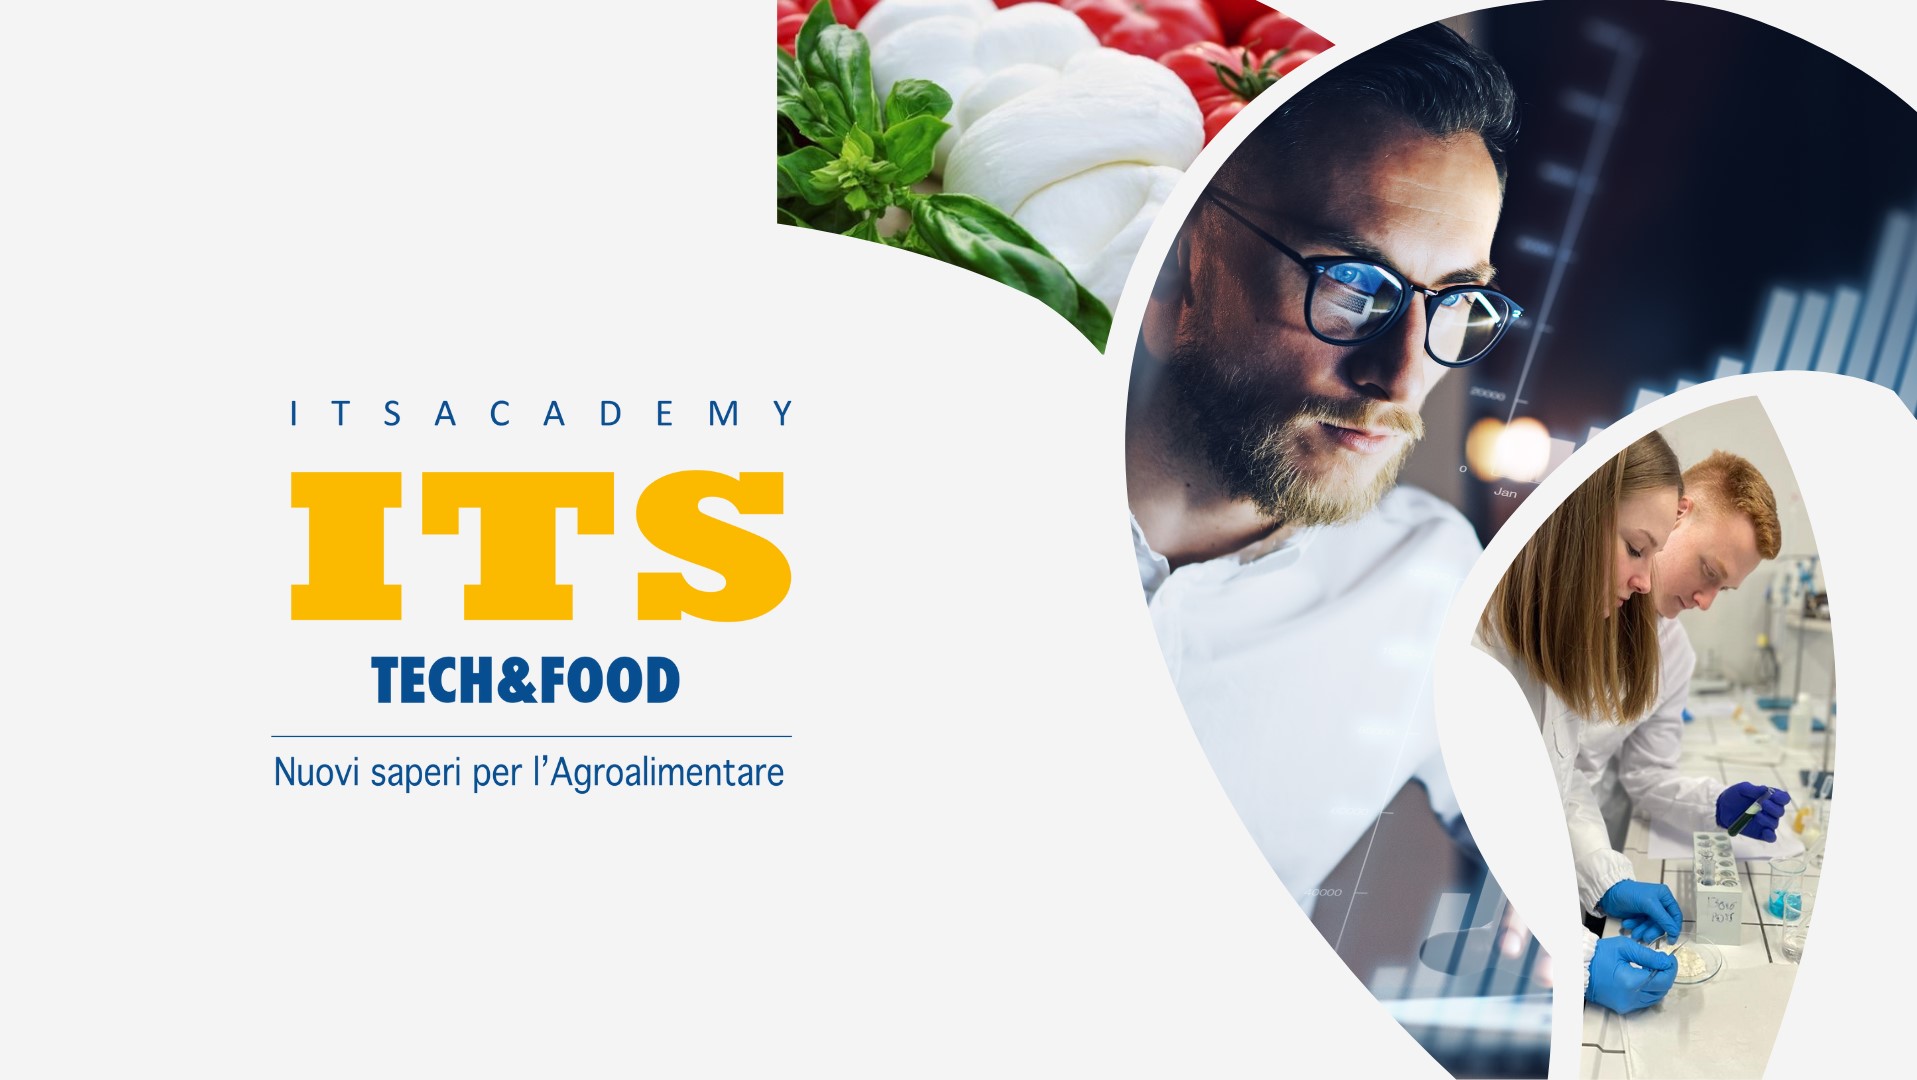 ITS Academy Tech&Food: opportunità di collaborazione con le imprese agroalimentari